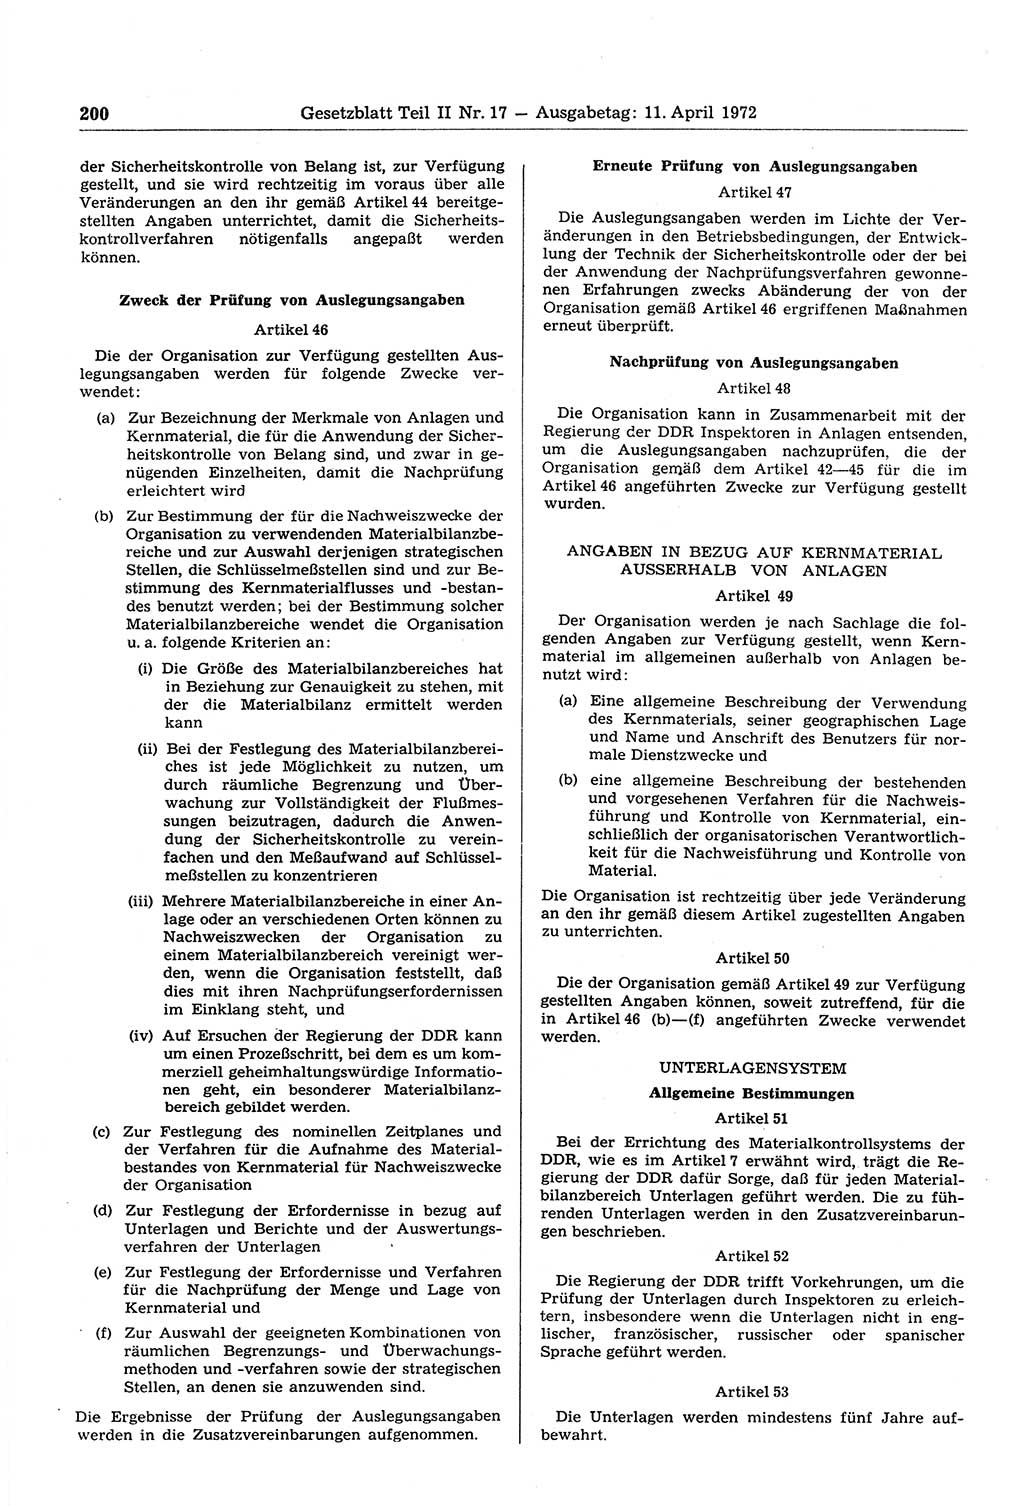 Gesetzblatt (GBl.) der Deutschen Demokratischen Republik (DDR) Teil ⅠⅠ 1972, Seite 200 (GBl. DDR ⅠⅠ 1972, S. 200)